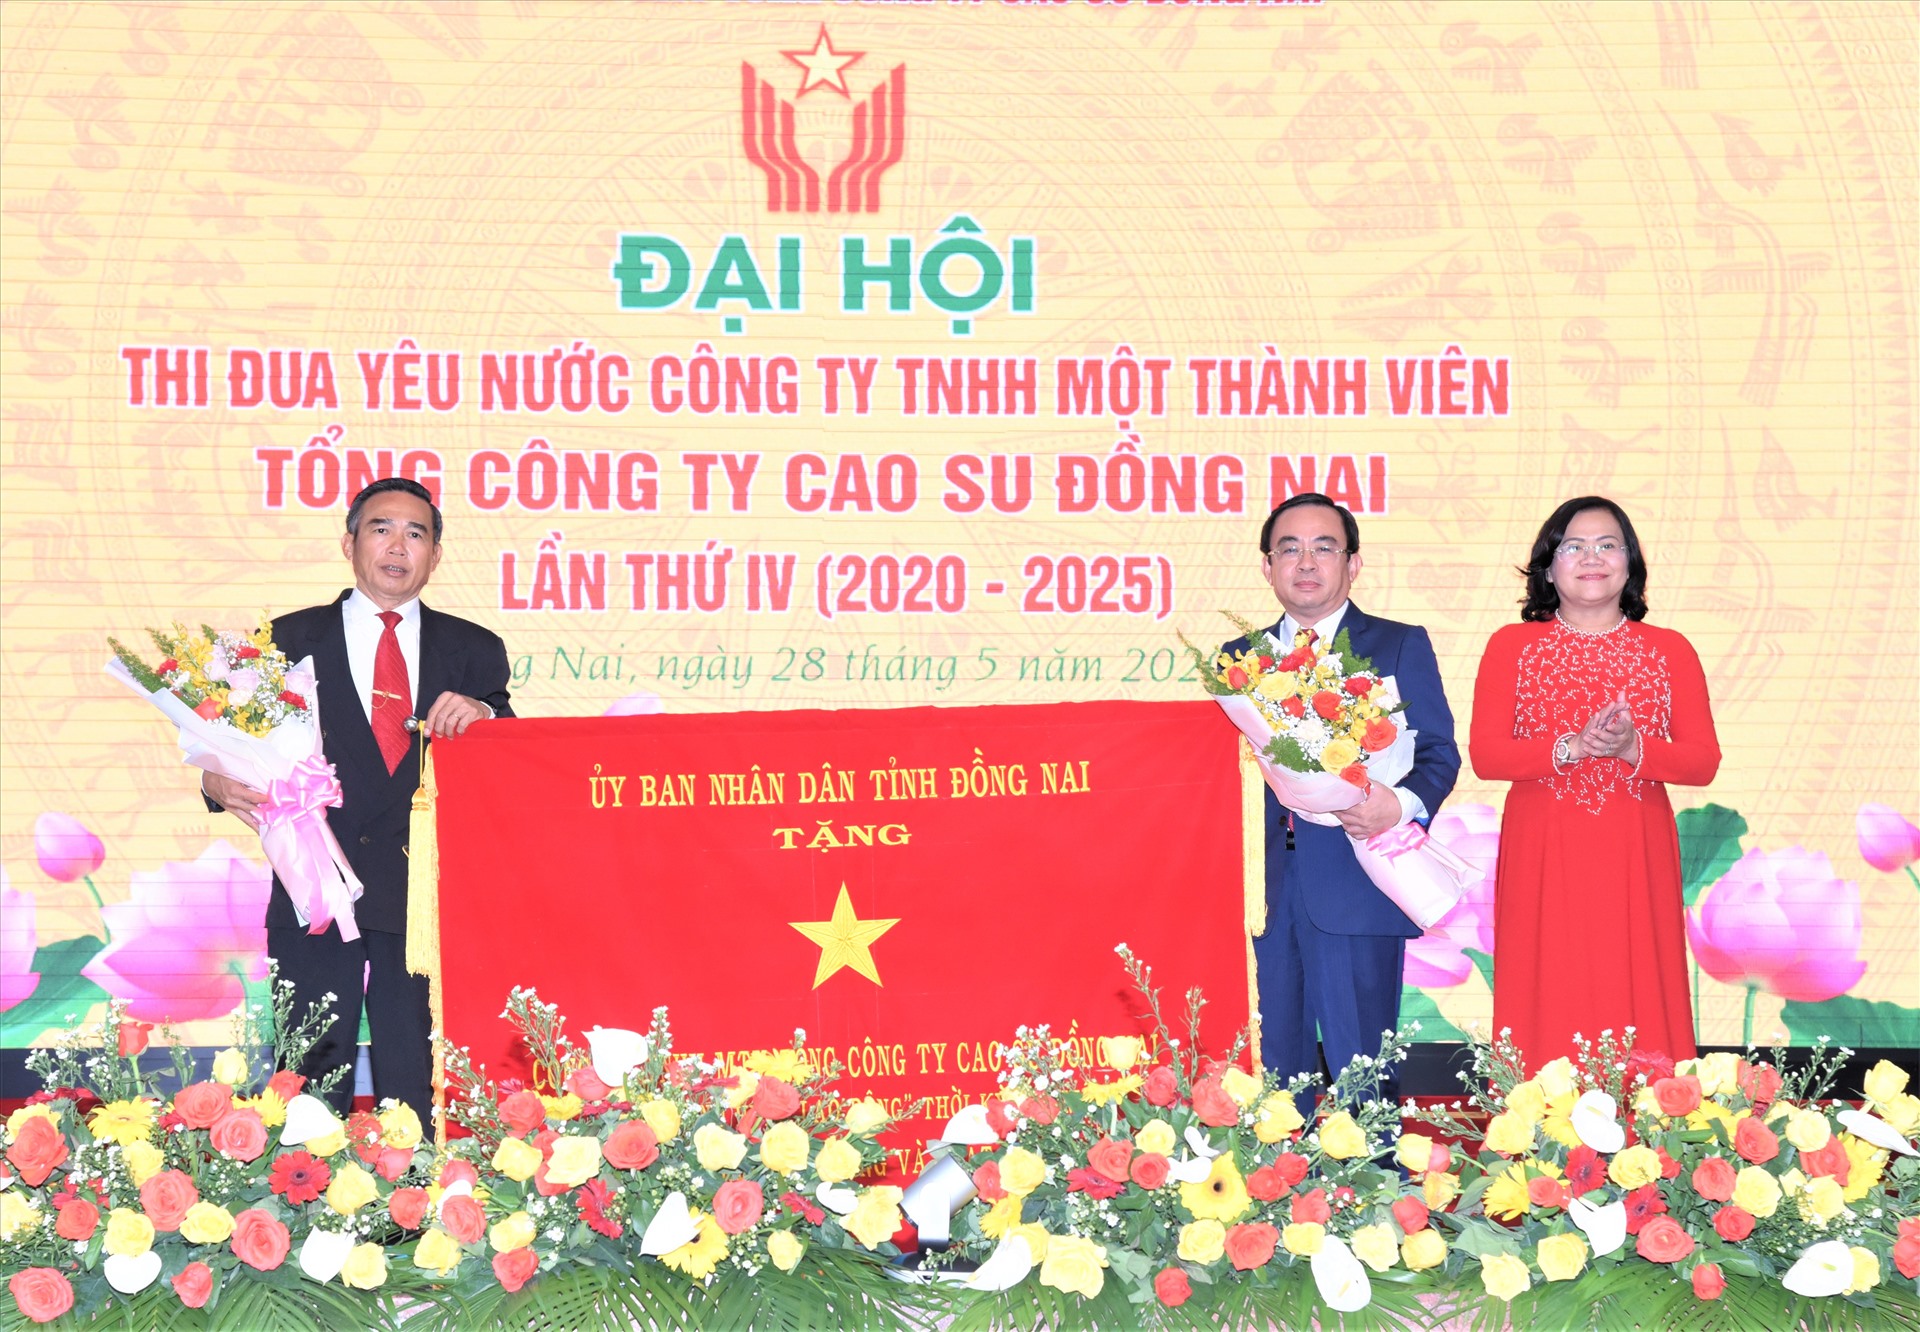 Bà Nguyễn Hòa Hiệp, Phó Chủ tịch UBND tỉnh Đồng Nai, tặng bức trướng cho Nan lãnh đạo Tổng Công ty Caosu Đồng Nai. Ảnh Nam Dương